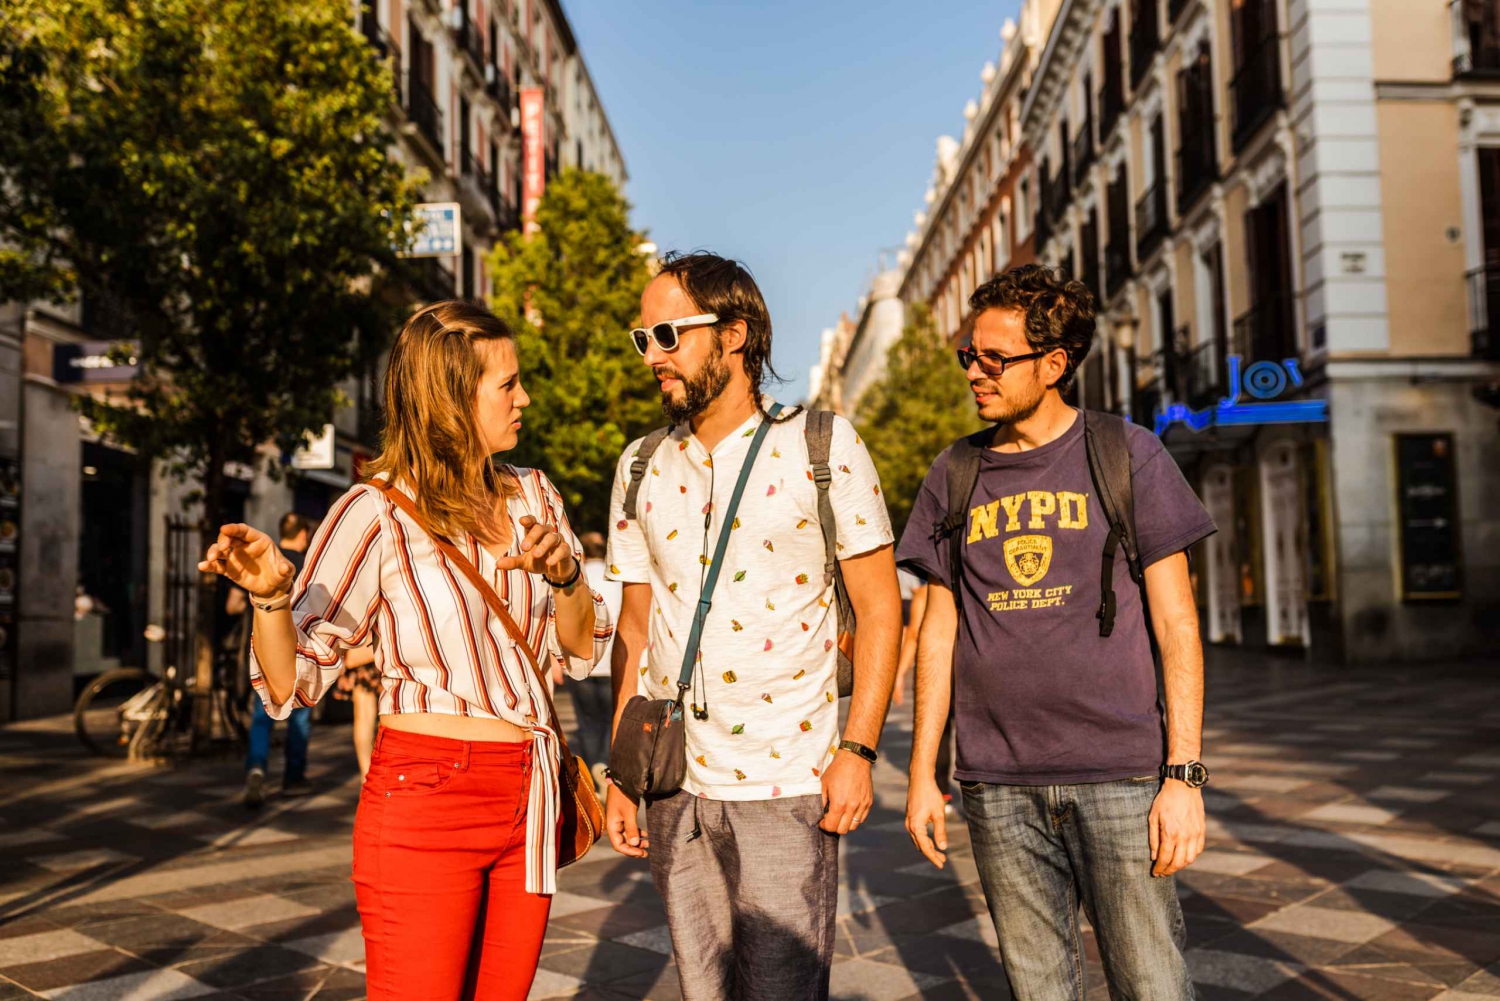 Madrid: Book a Local Friend